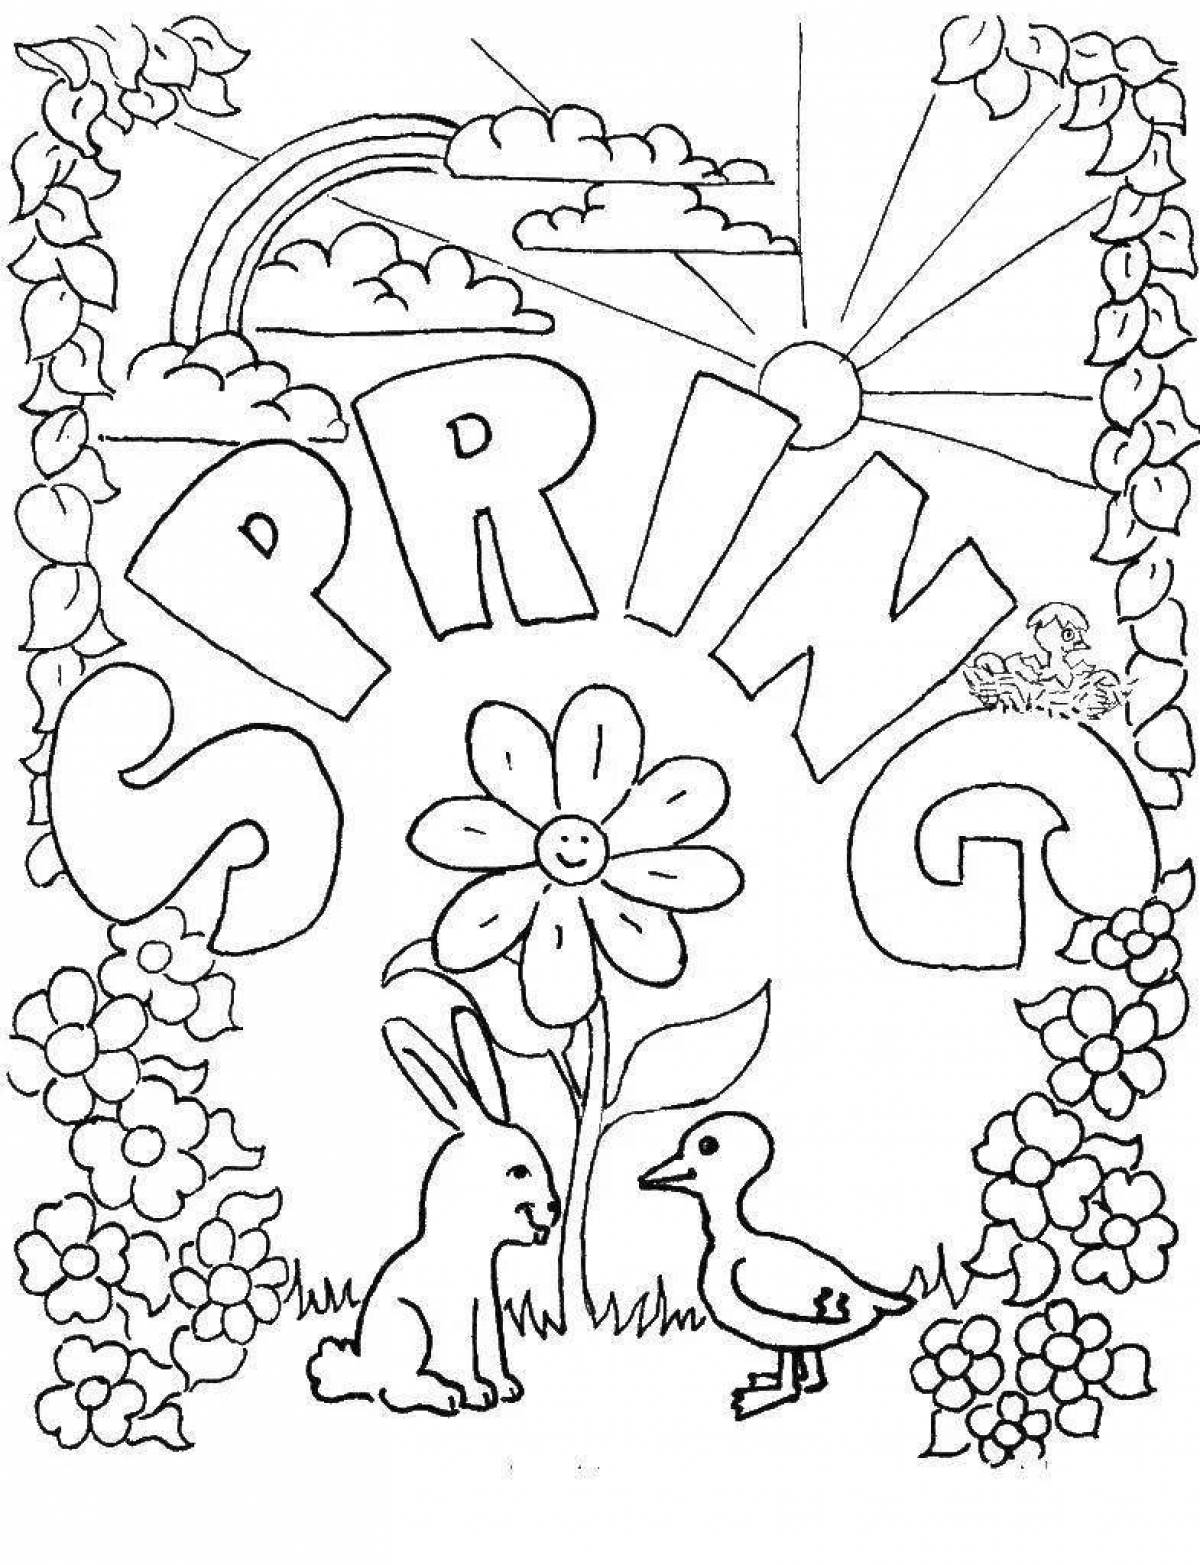 Fun creative spring coloring book